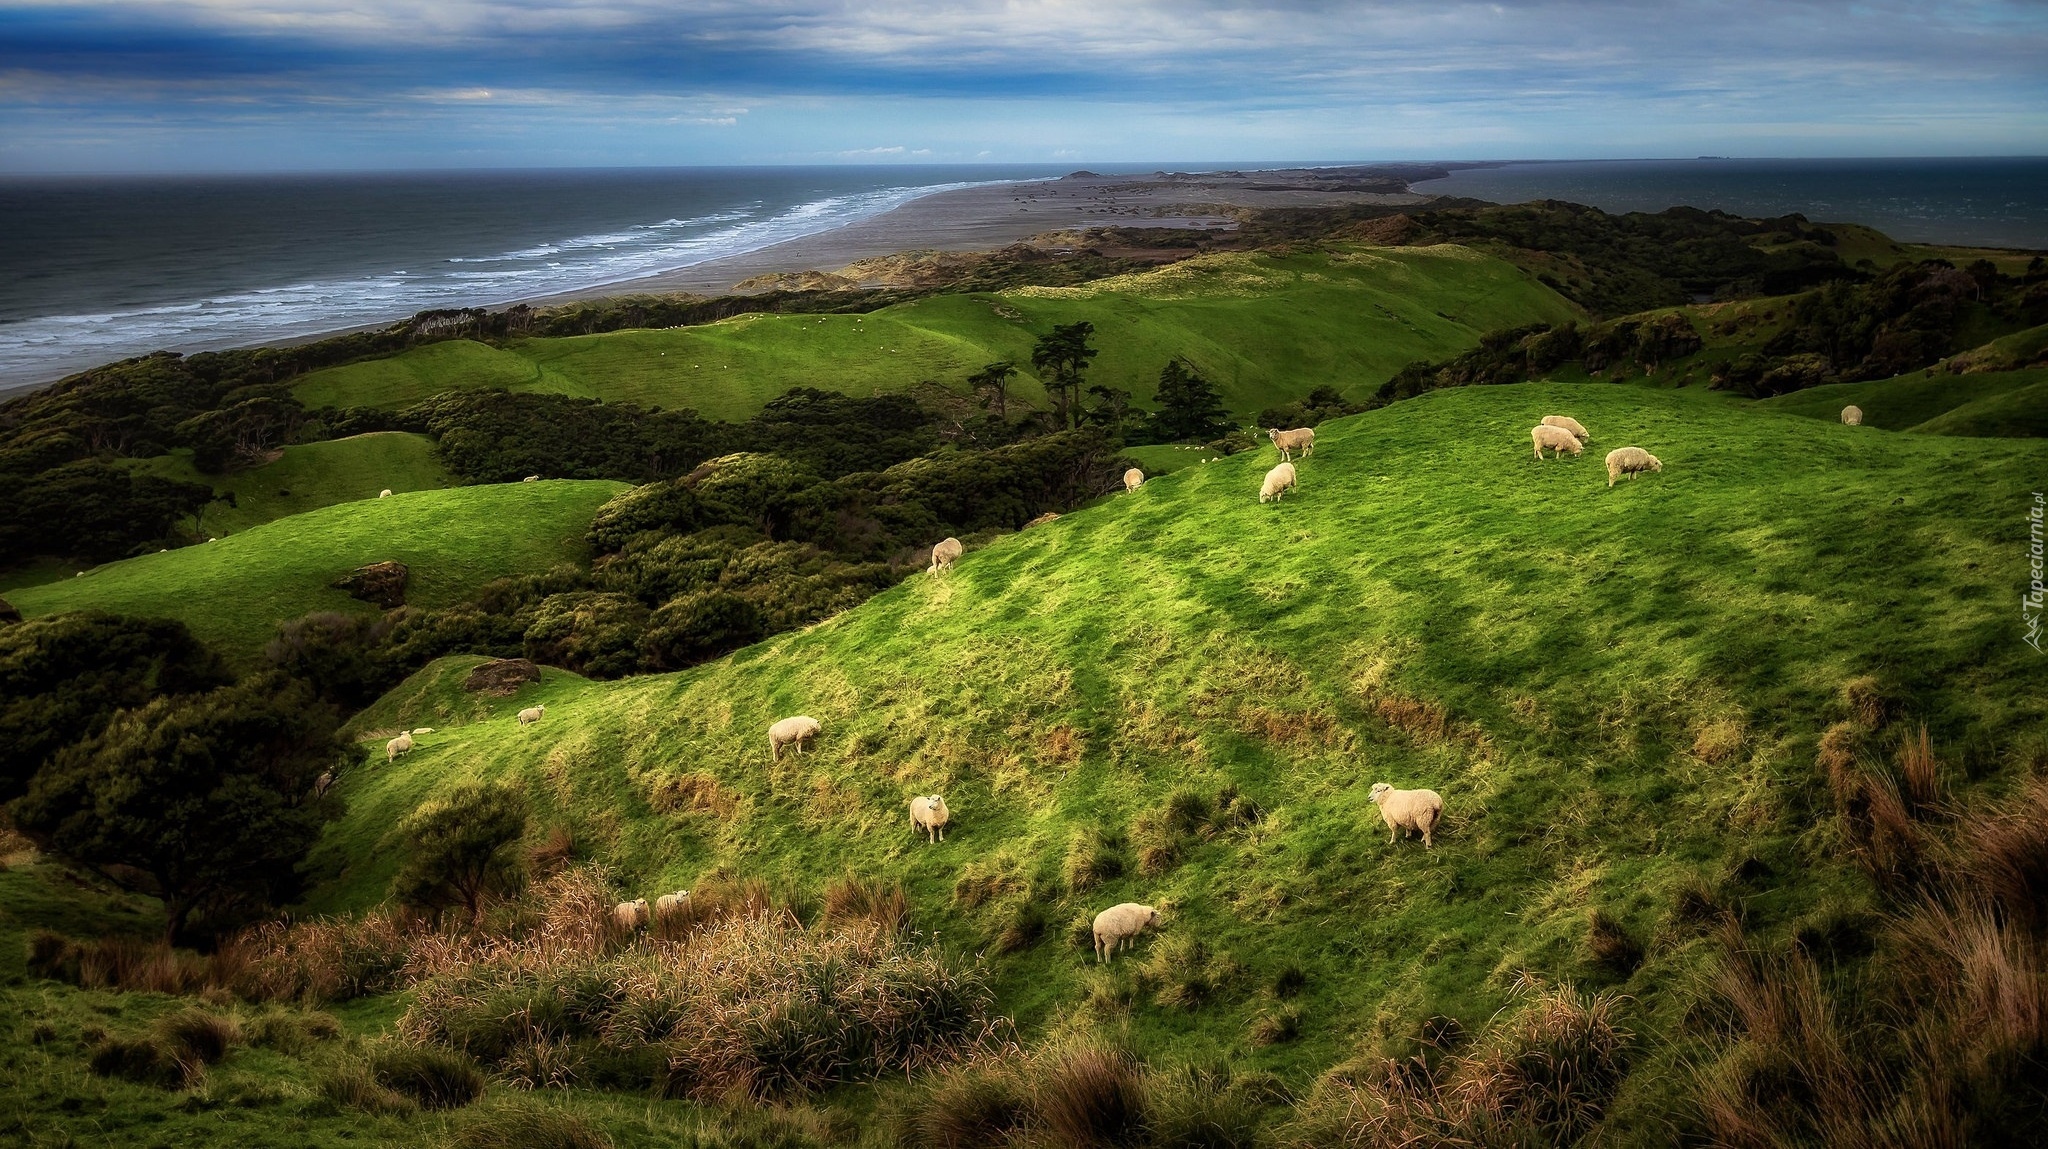 Rezerwat przyrody Farewell Spit, Nowa Zelandia, Krajobraz, Wzgórza, Trawa, Owce, Morze, Wybrzeże